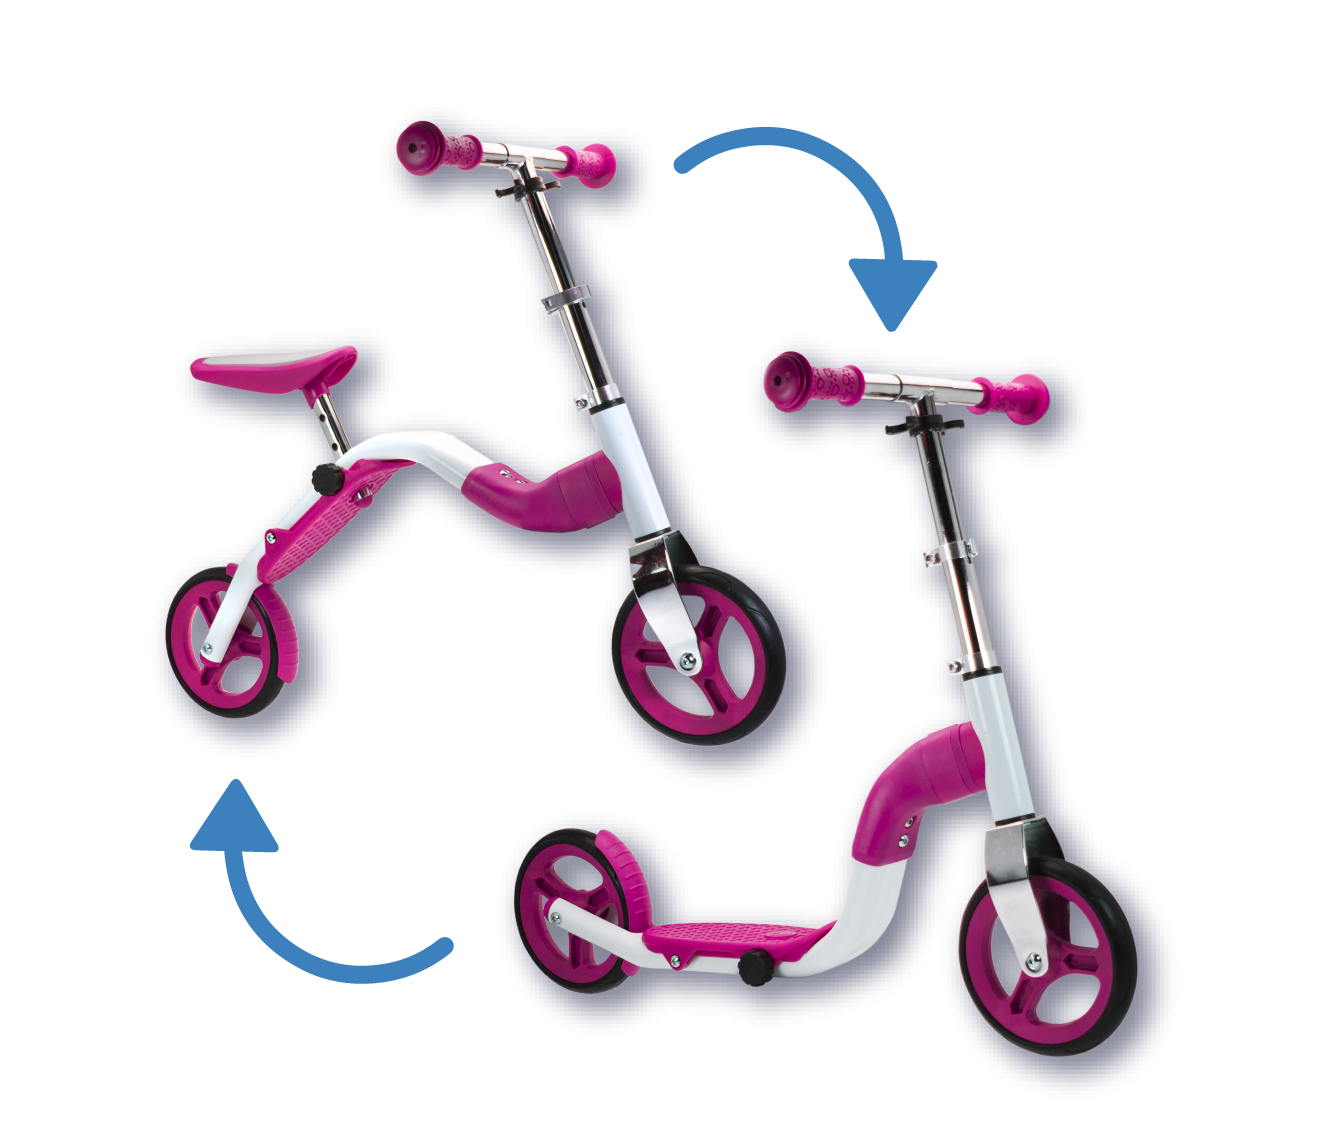 Scoobik Løbecykel / Løbehjul for børn og unge